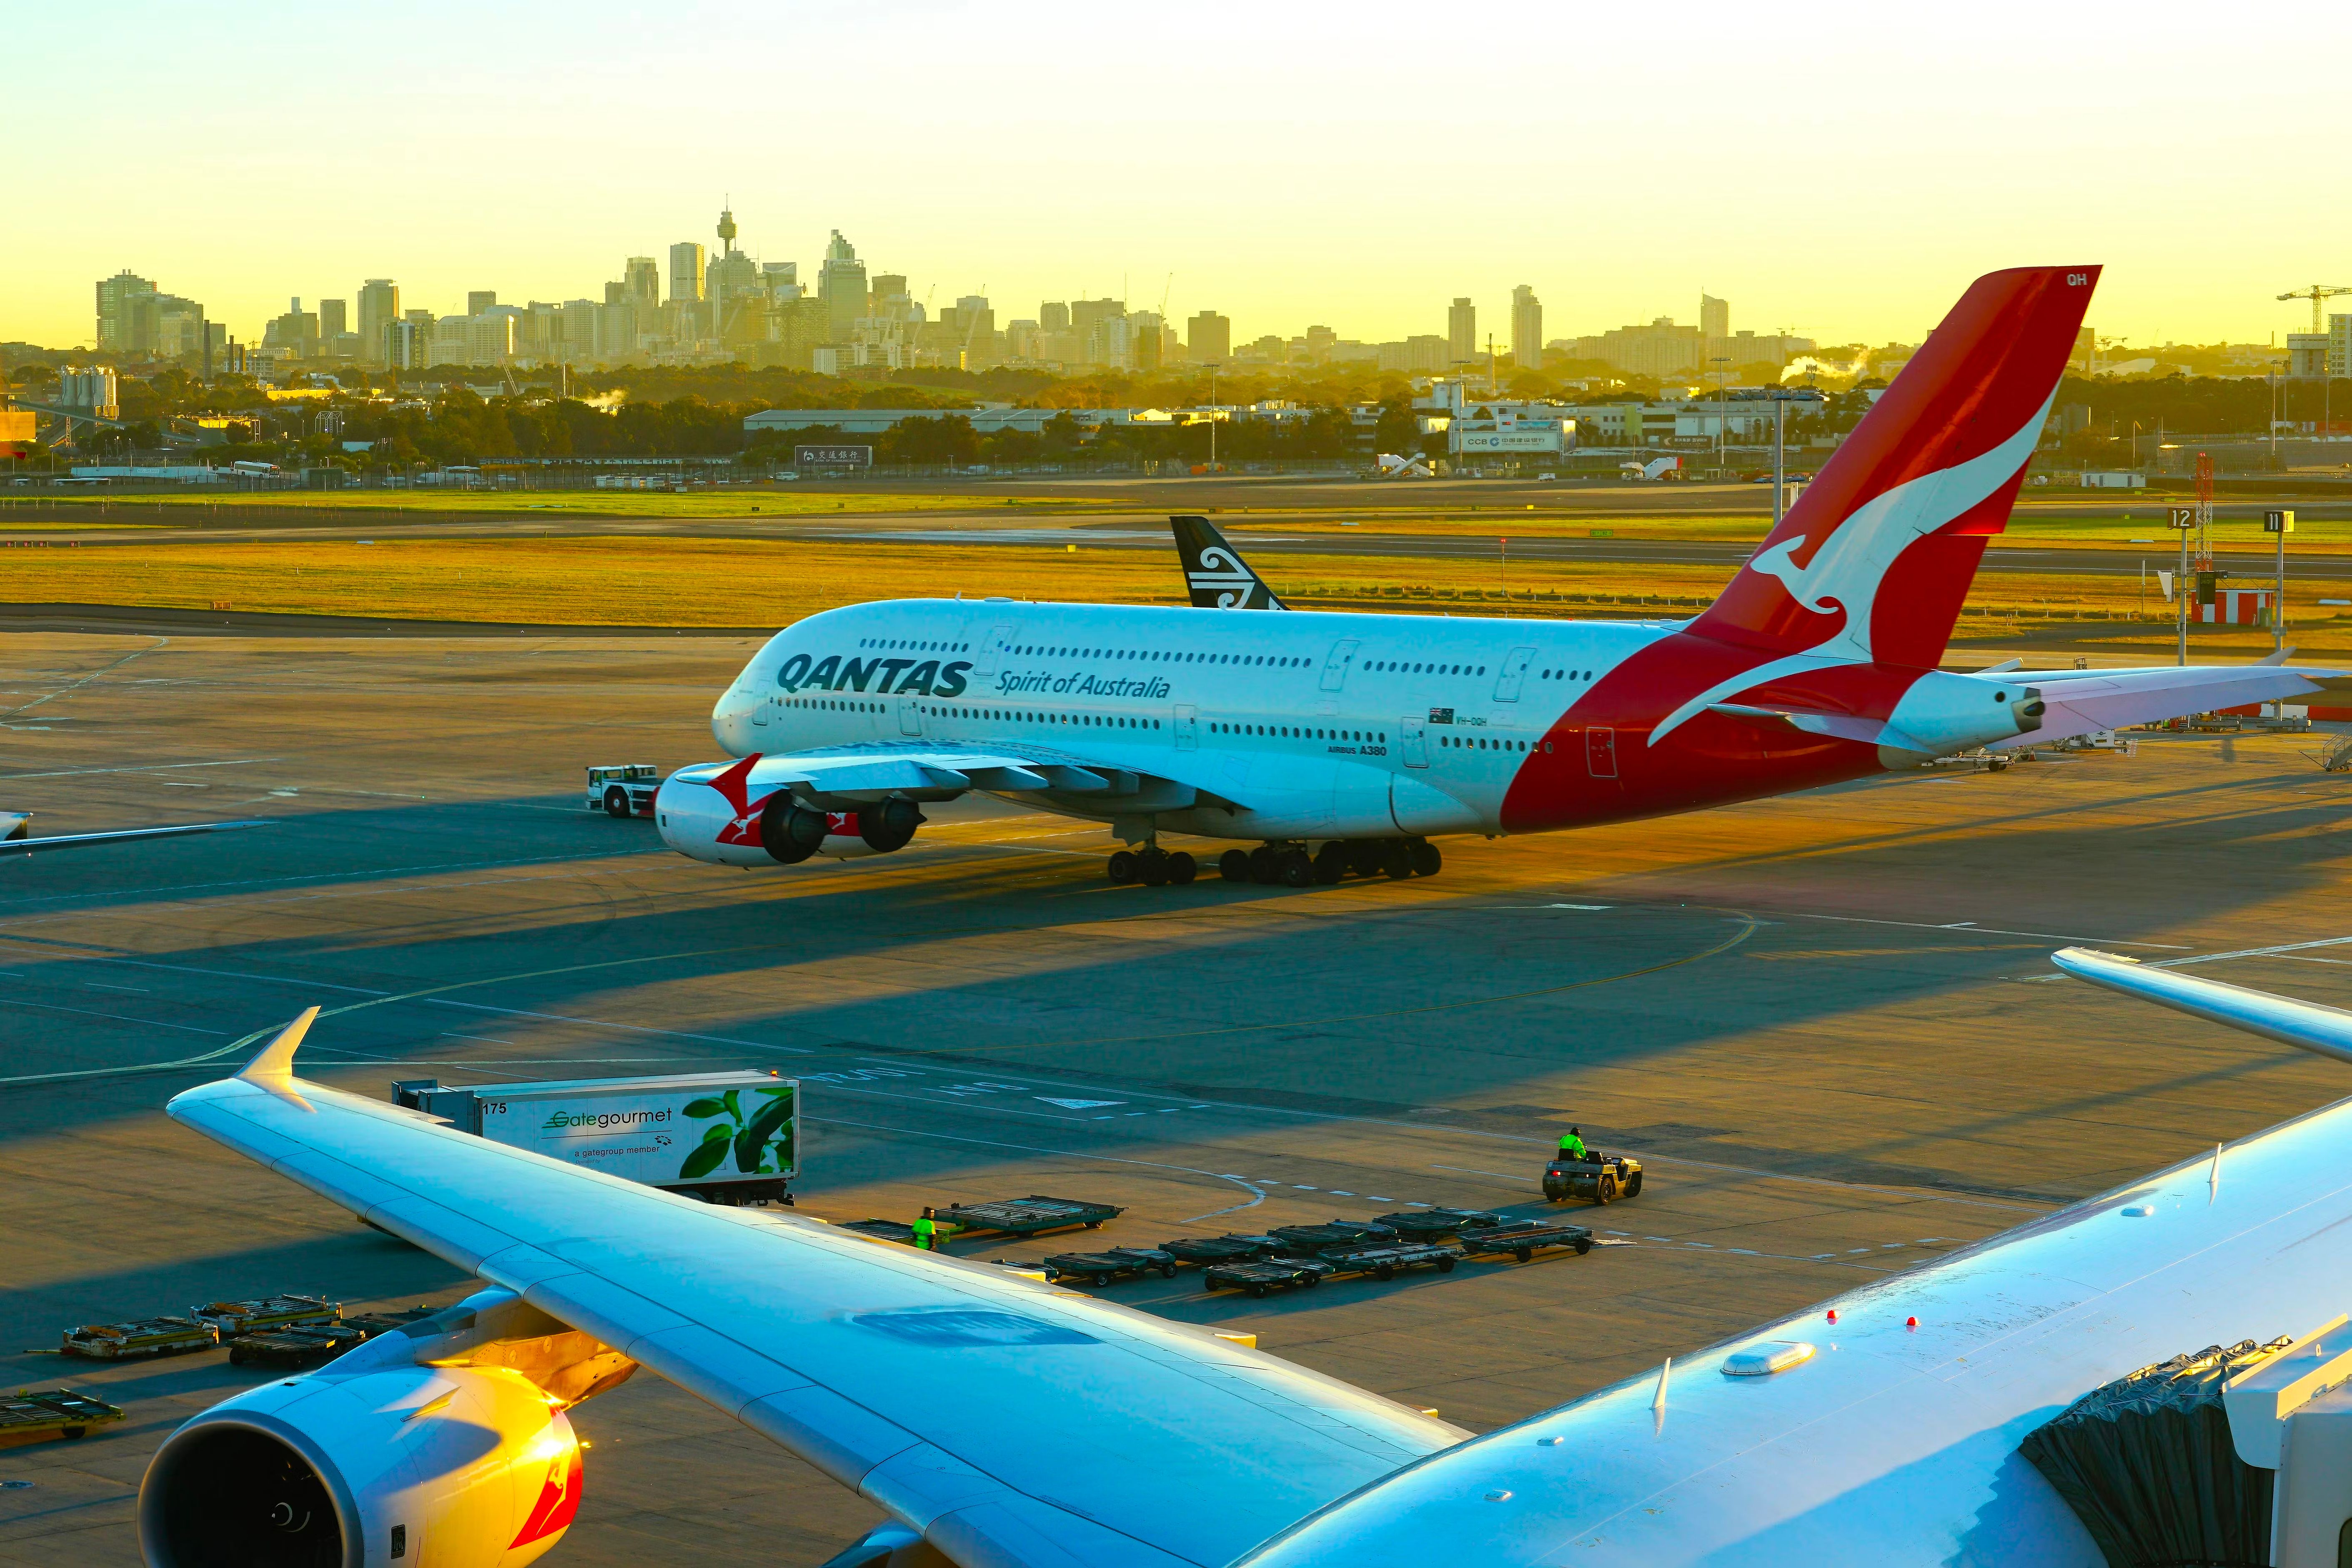 Qantas A380 taxiing at Sydney Airport